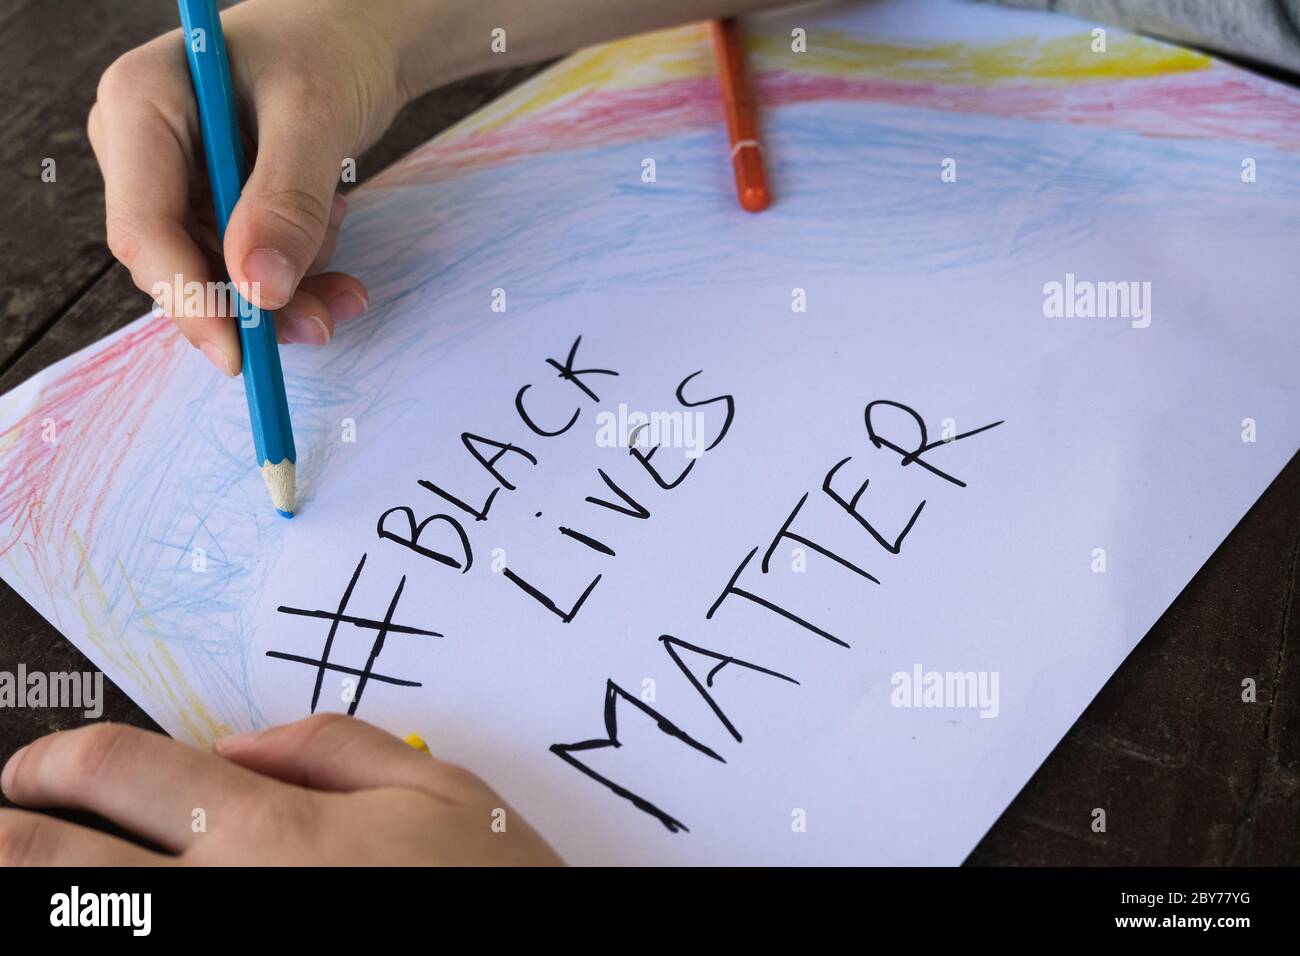 Capretto ragazzo dipinge disegno per sostenere nero vite materia protesta in usa, nessun razzismo Foto Stock